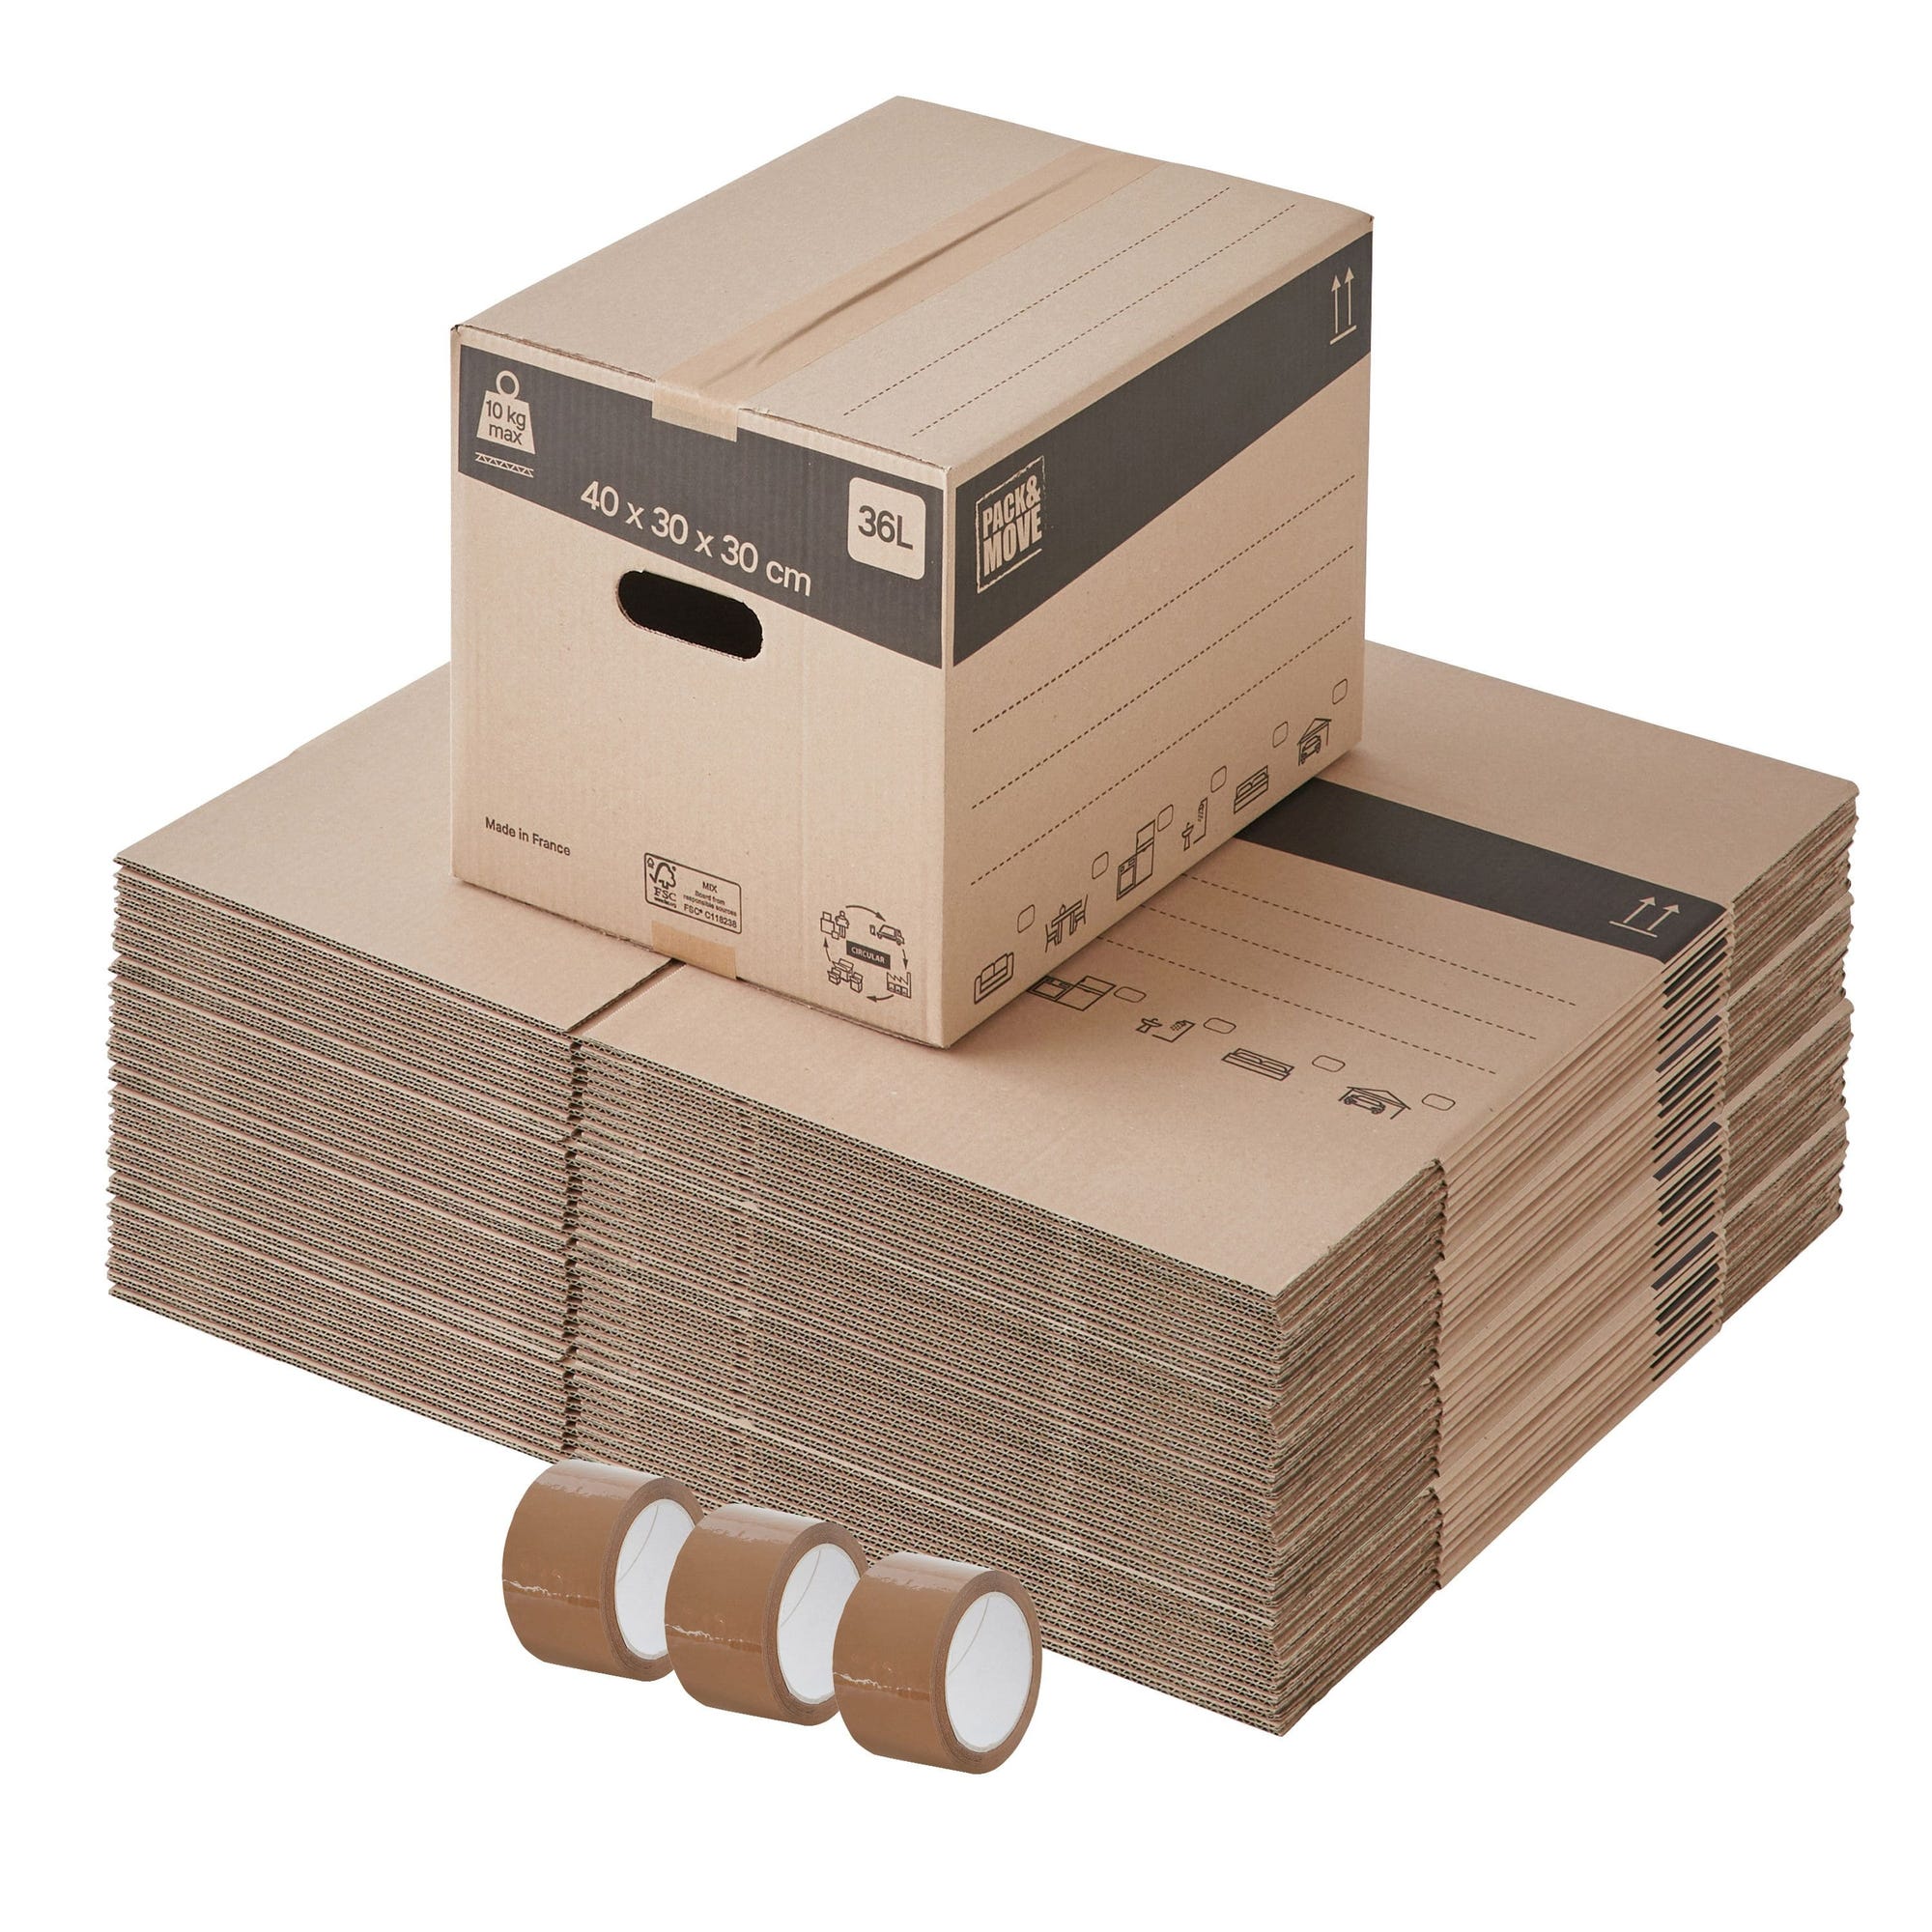 Lot de 60 cartons de déménagement standards avec poignées - 36L, charge max 10kg - made in France + 3 adhésifs offerts 0